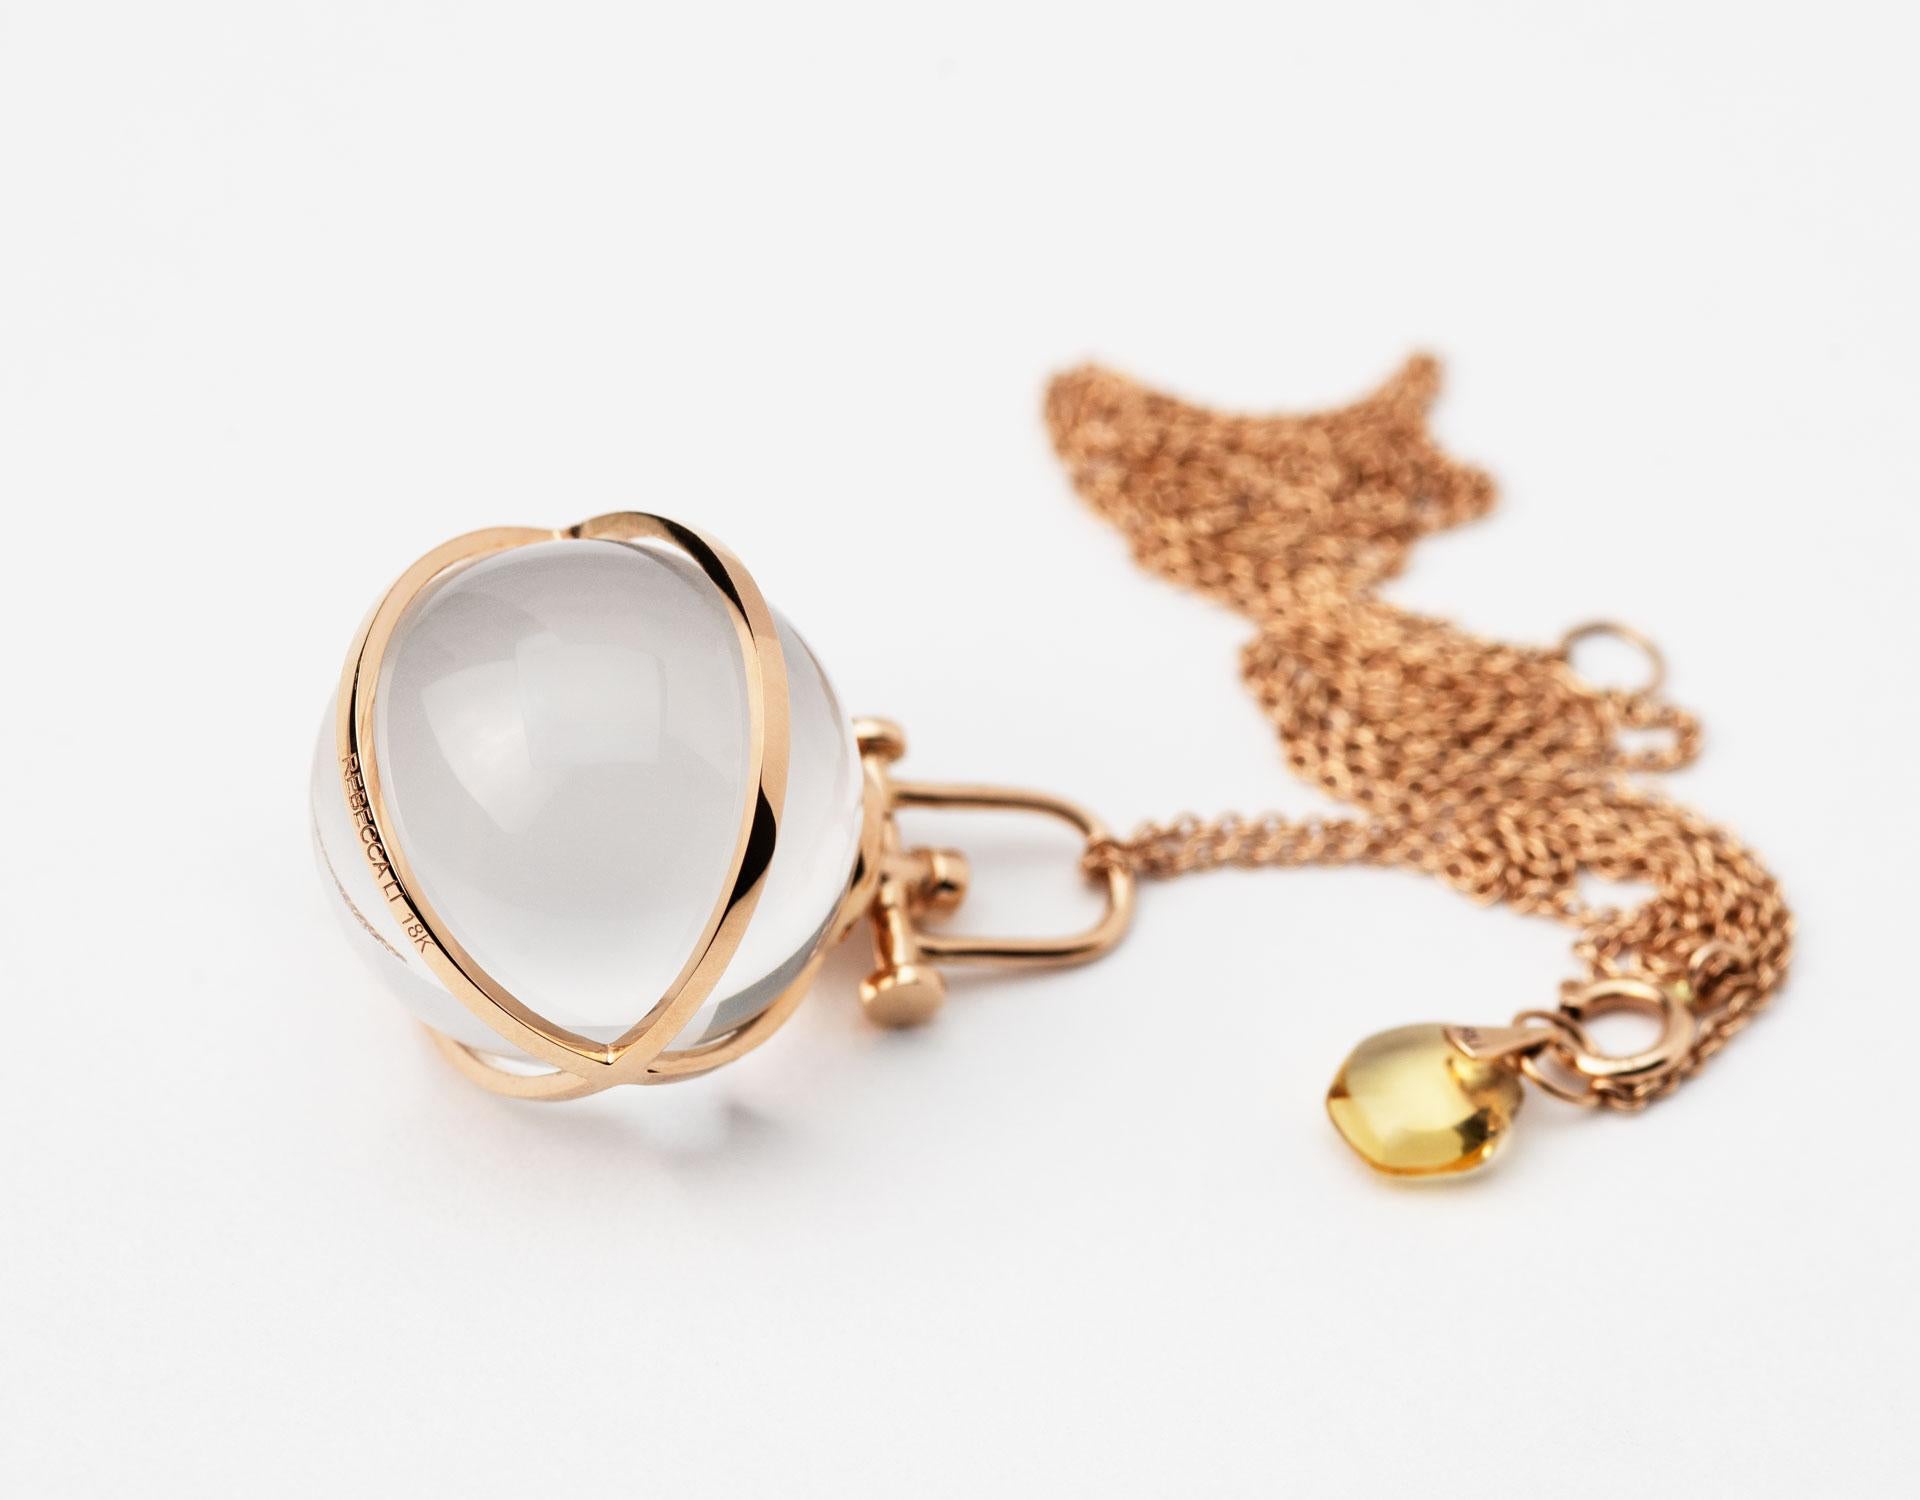 Rebecca Li entwirft Achtsamkeit. 
Diese kühne Kristallkugel-Halskette ist aus ihrer Crystal Orb Collection. Sie glaubt, dass Wunder geschehen, wenn wir aufgeschlossen sind.
Bergkristall bedeutet Manifestation, Positivität und Glück.
Das wichtigste